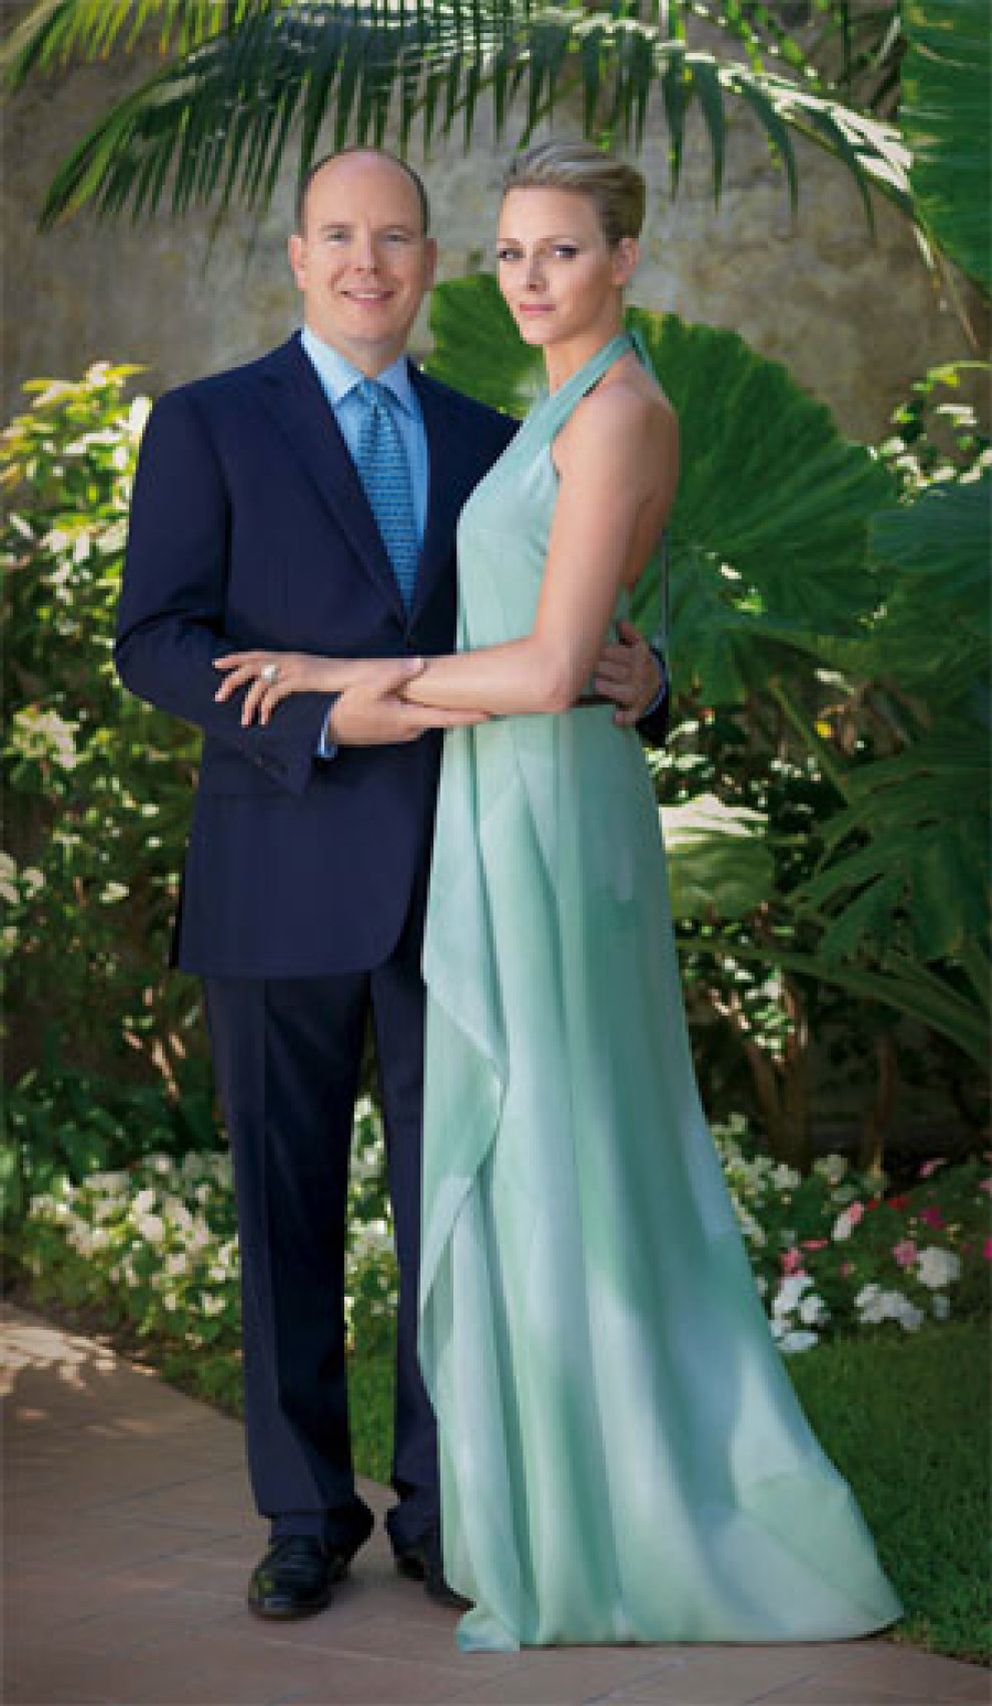 Foto: La boda del príncipe Alberto relanzará la economía de Mónaco